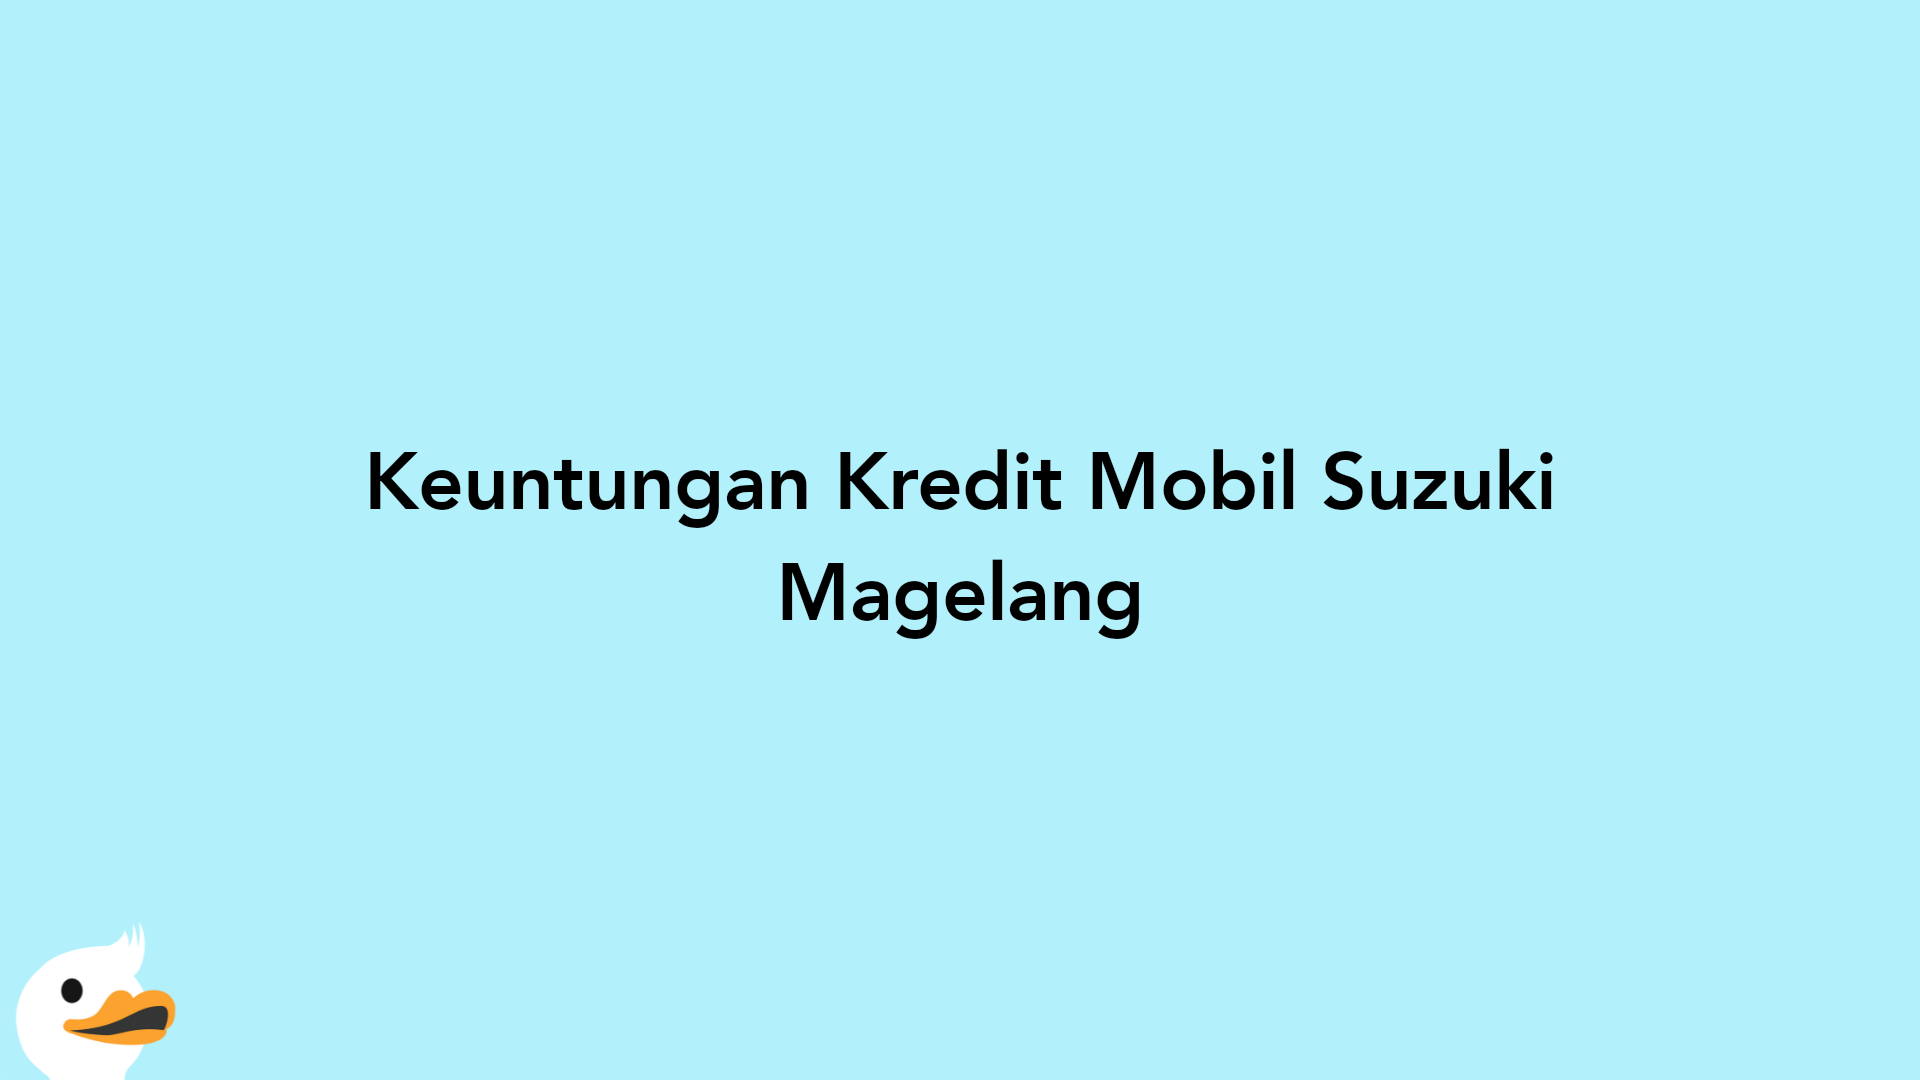 Keuntungan Kredit Mobil Suzuki Magelang